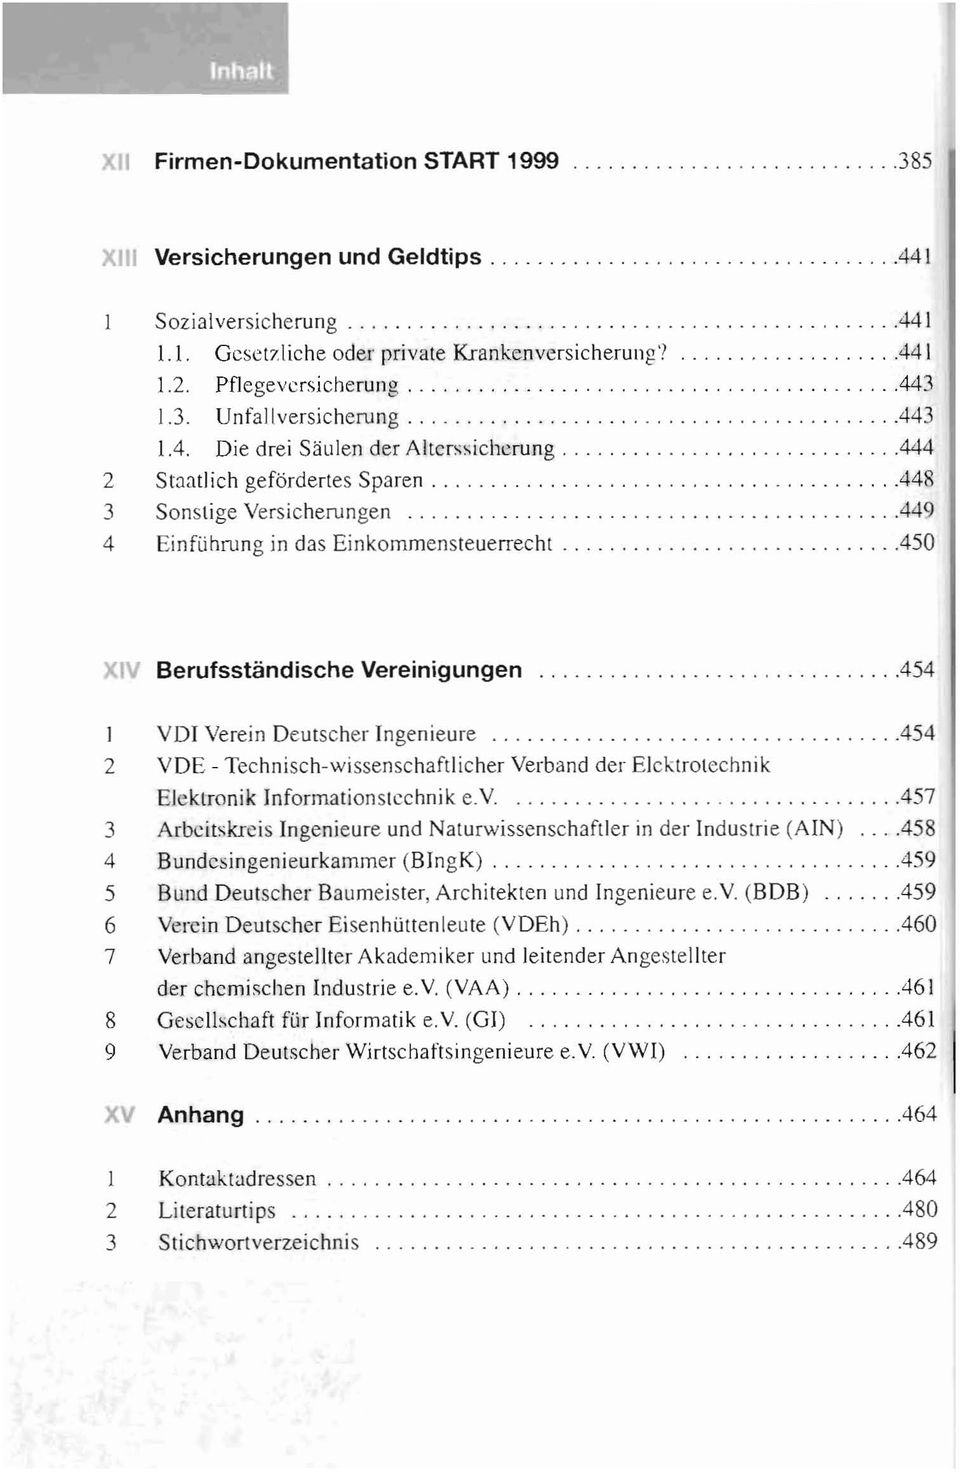 454 I VDI Verein Deutscher Ingenieure 2 VDE - Technisch-wissenschaftlicher Verband der Elektrotechnik EJektTonik Informationstechnik ev, 3 Arbeitskreis Ingenieure und Naturwissenschaftler in der